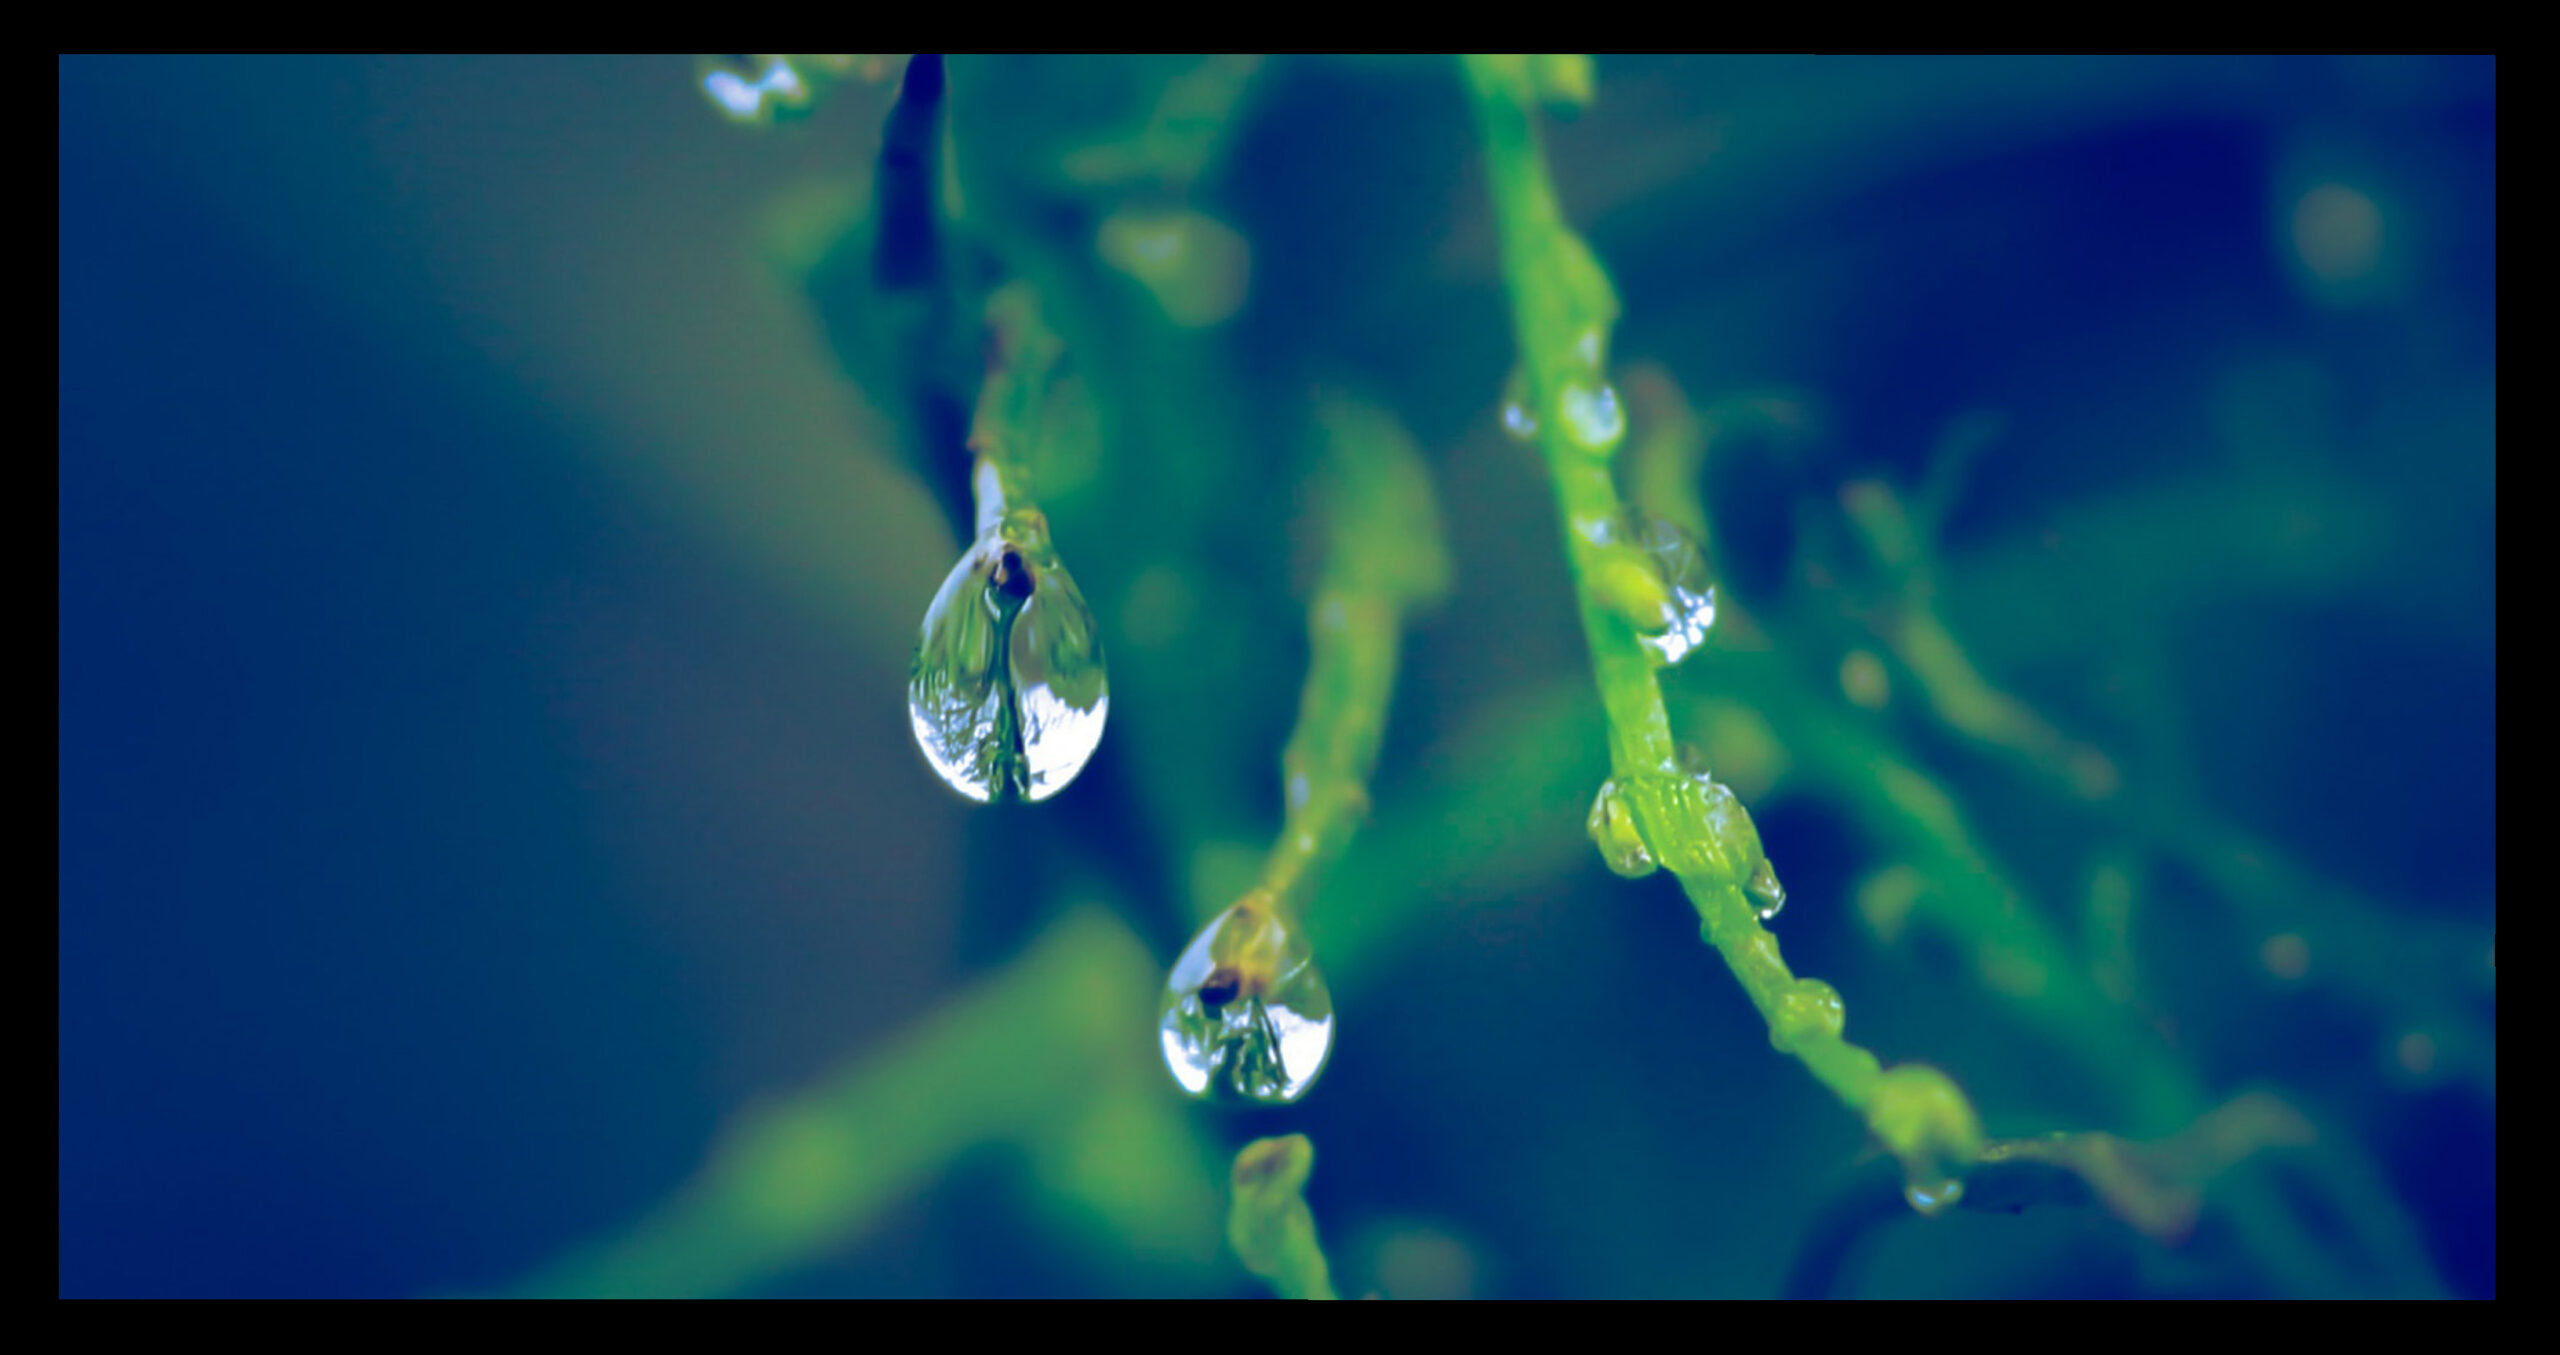 Tecnica fotografica: alcuni consigli per fotografare con la pioggia